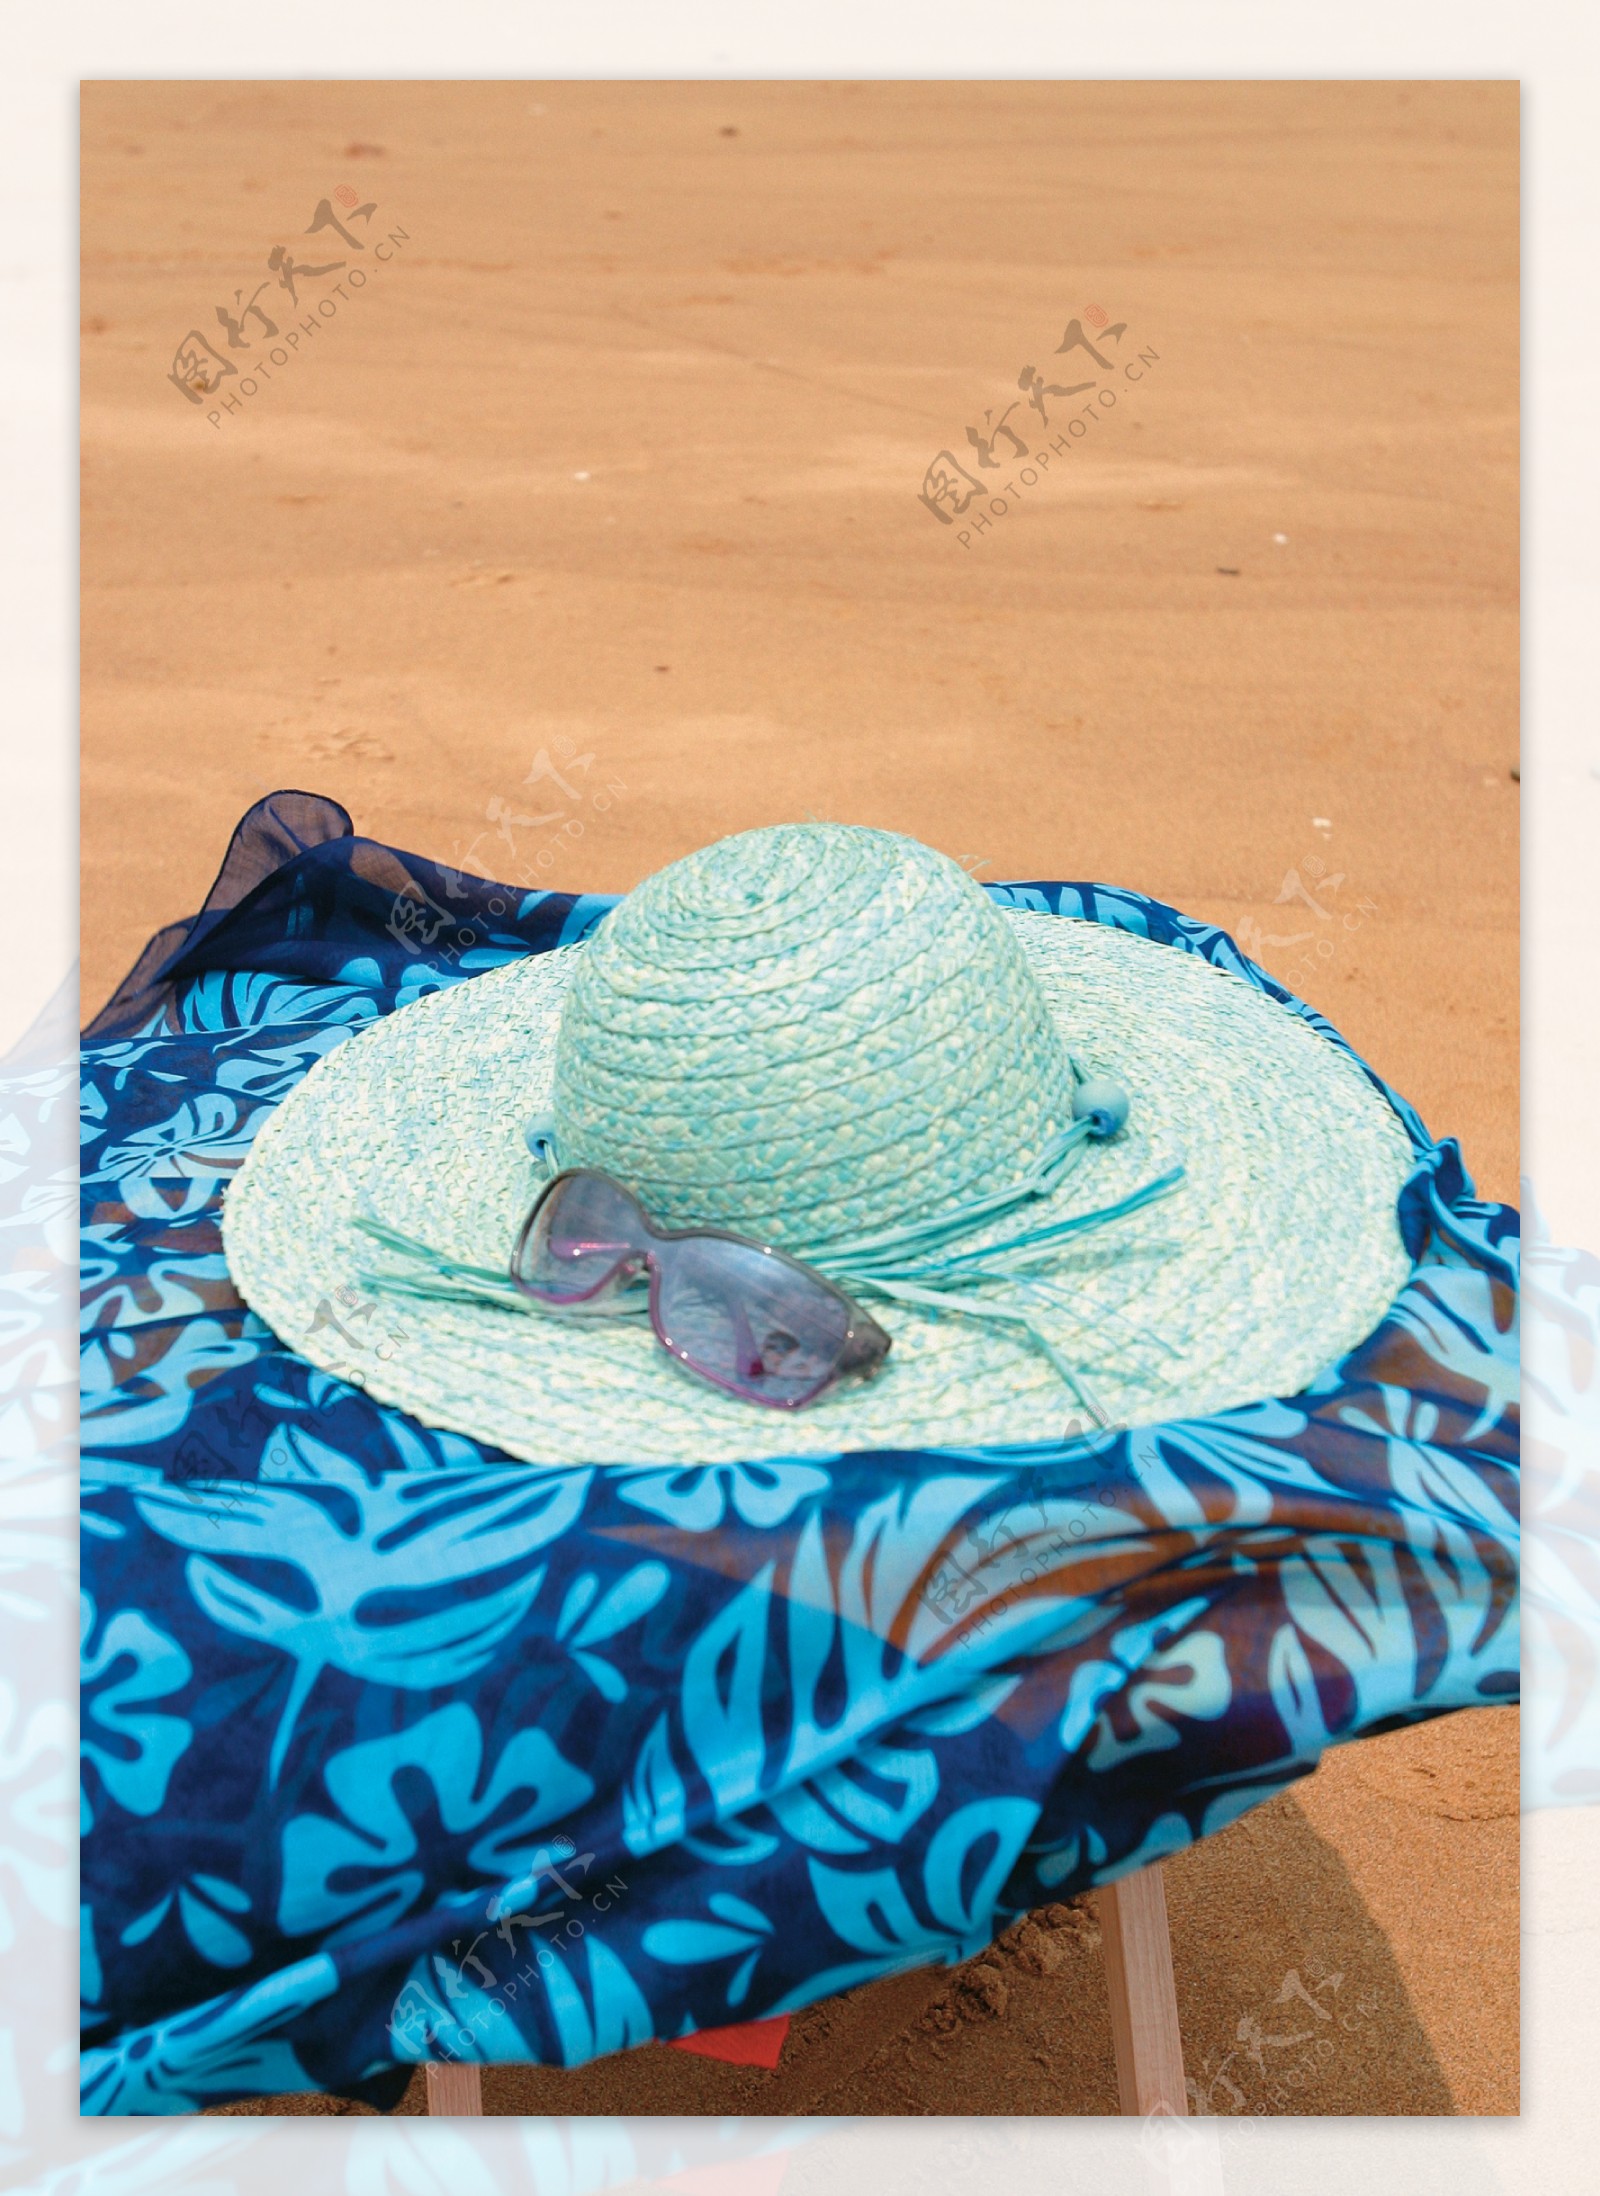 夏日气息海星海边阳光花夏日用品水风景帽子鞋子沙滩旅游